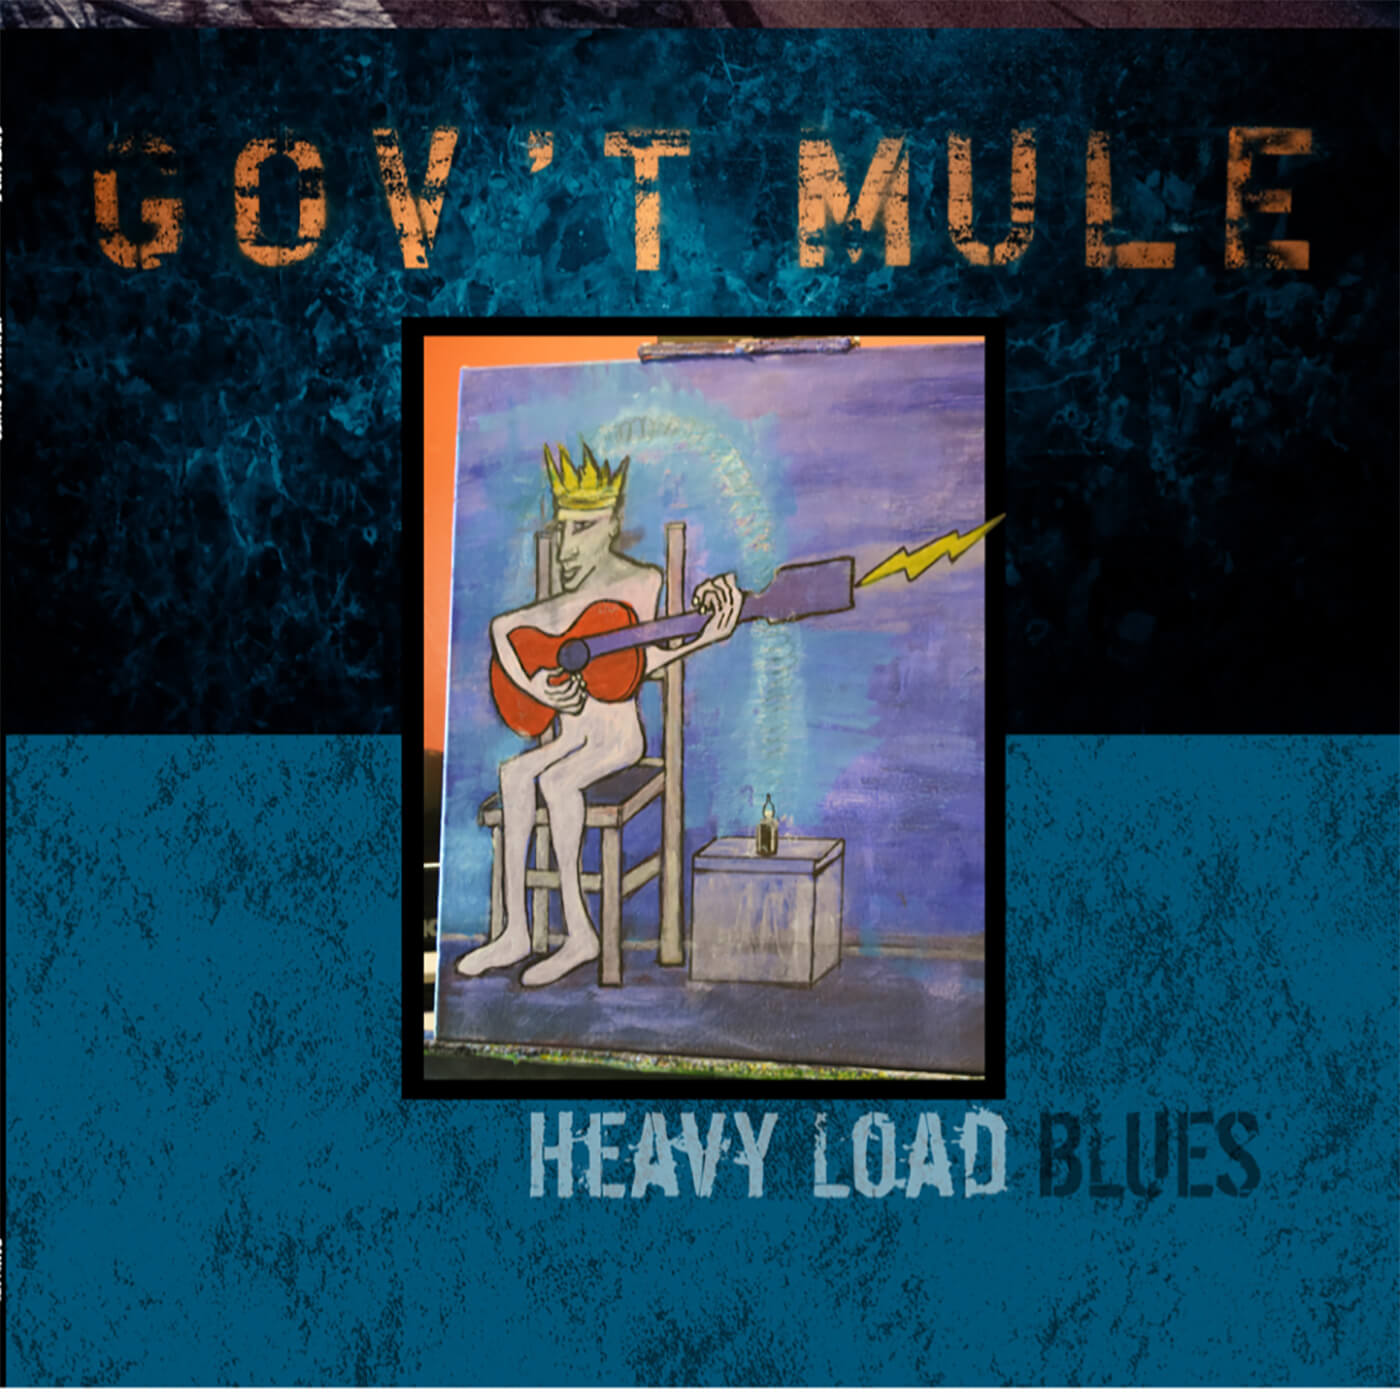 Gov't Mule - Heavy Load Blues